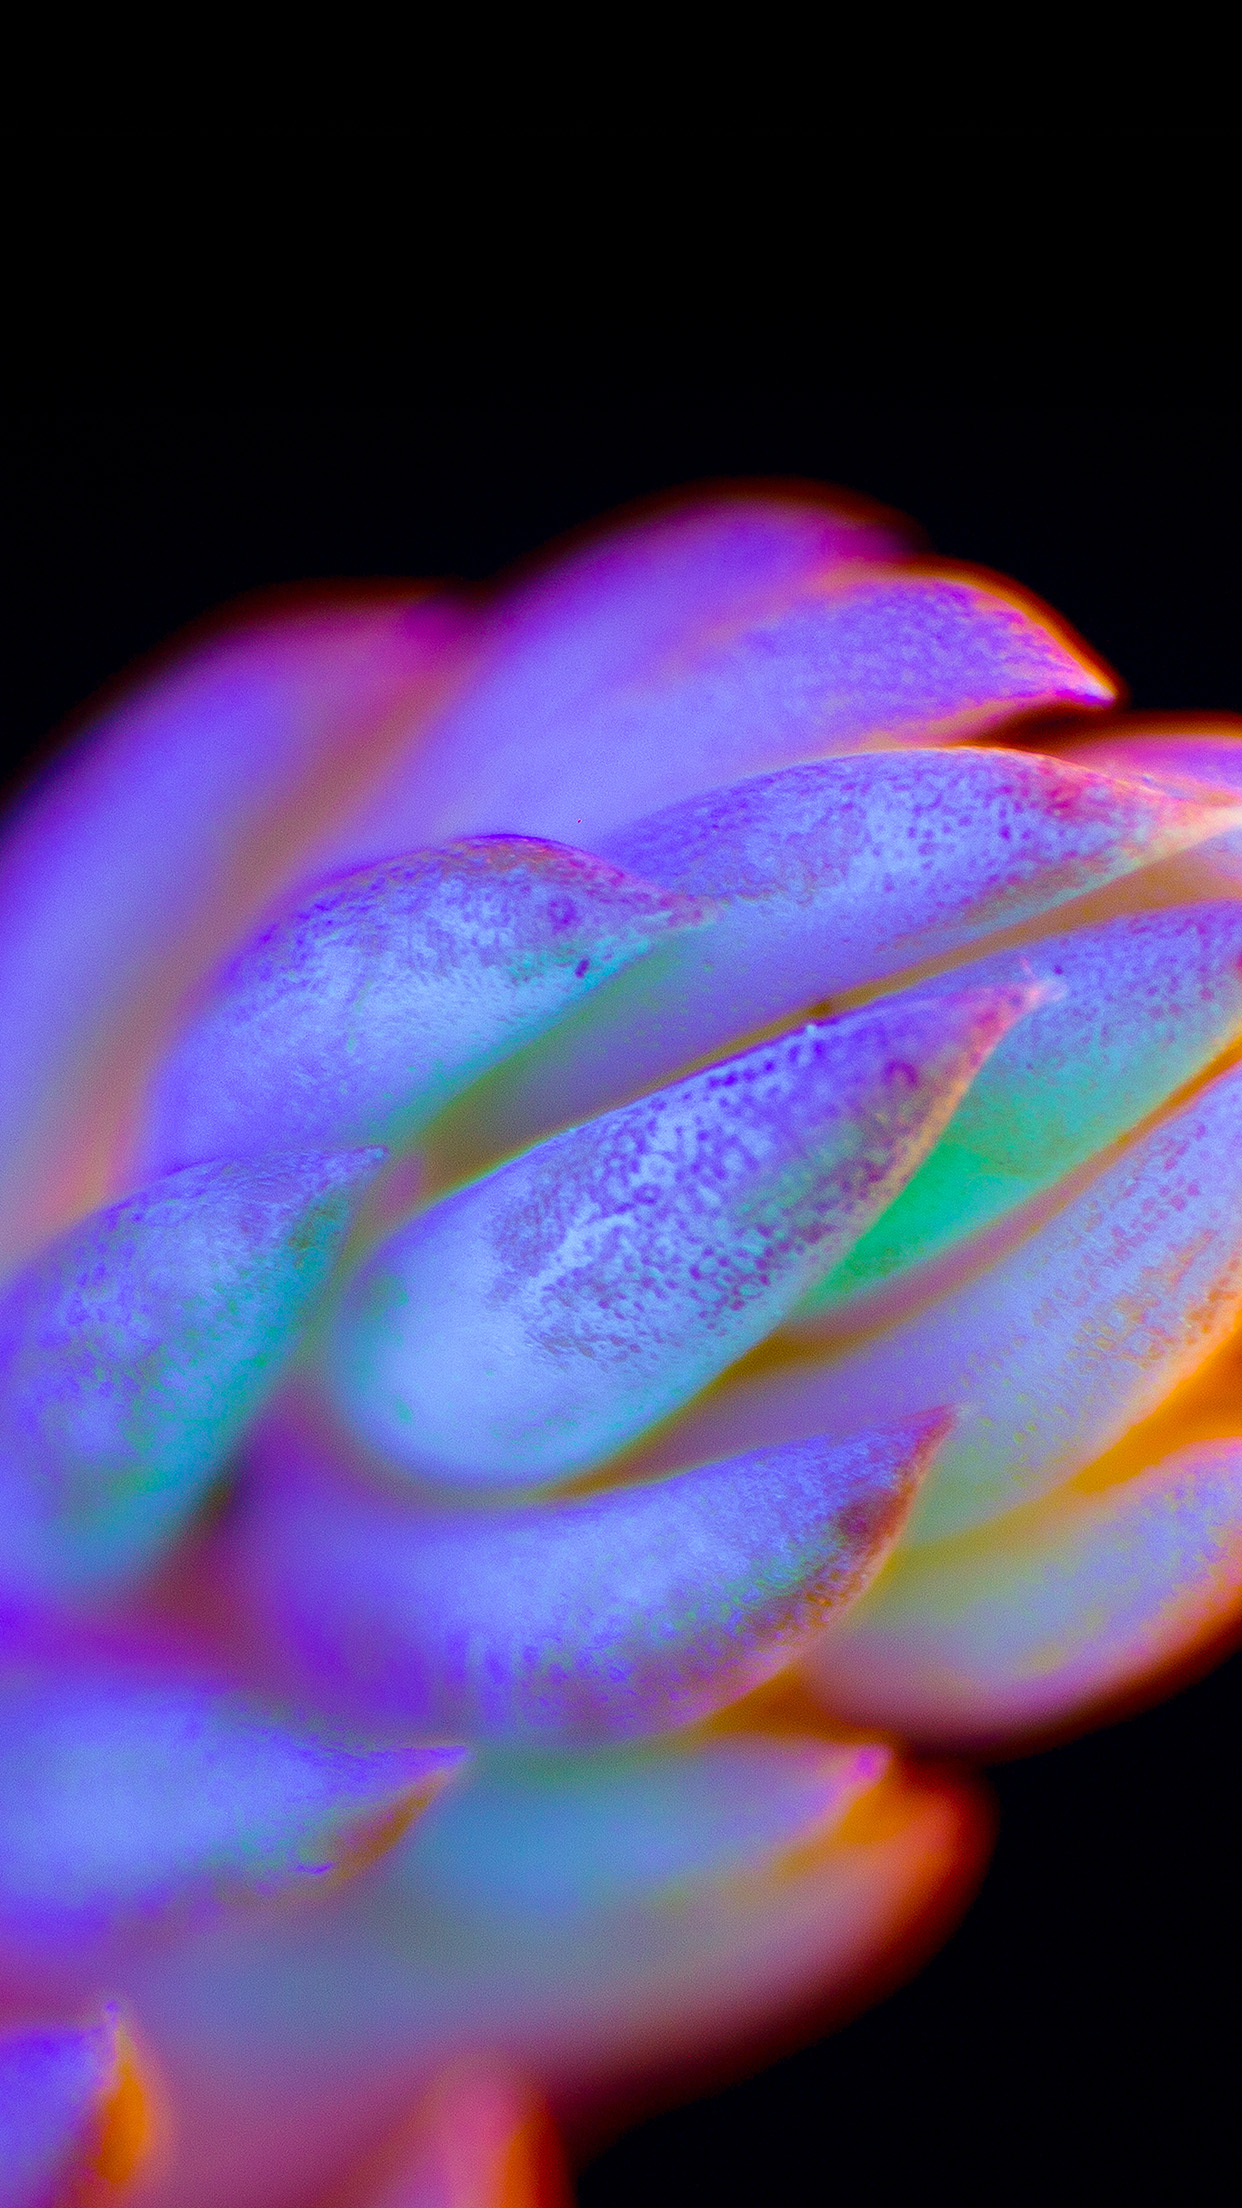 iPhone X wallpaper. neon creature dark color flower art